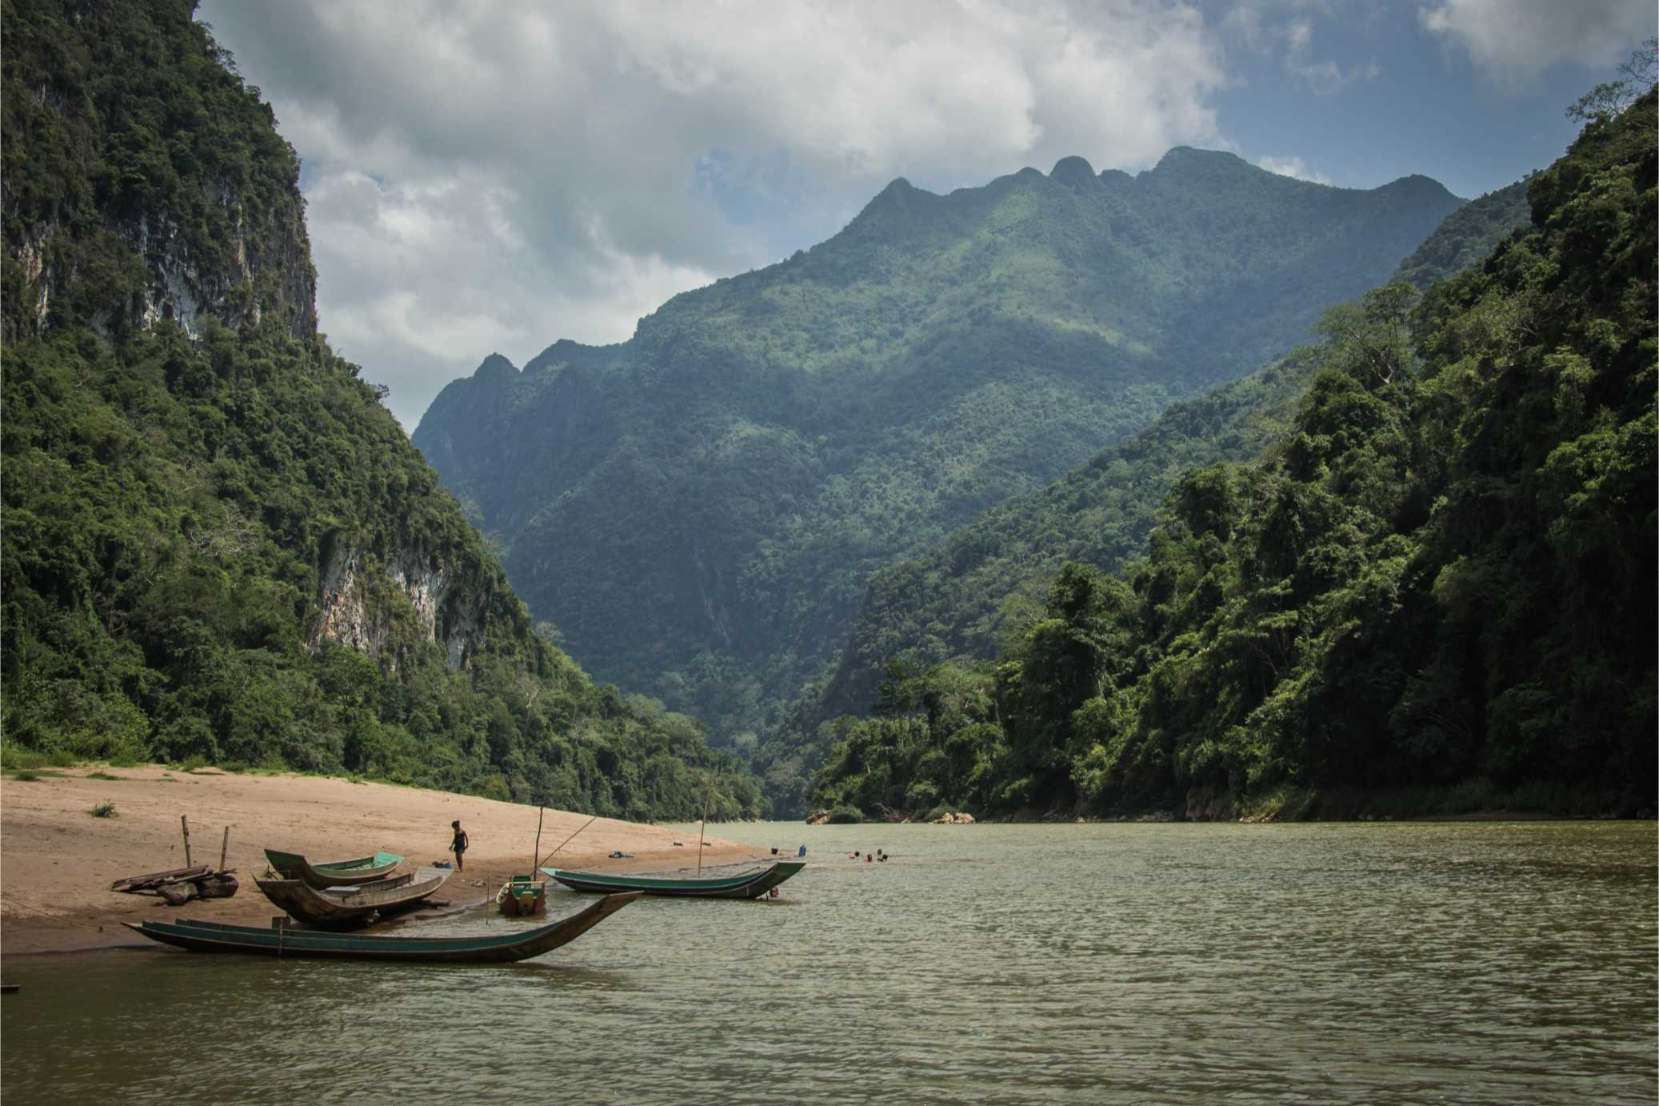 Amazon Laos - Does Amazon ship to Laos?